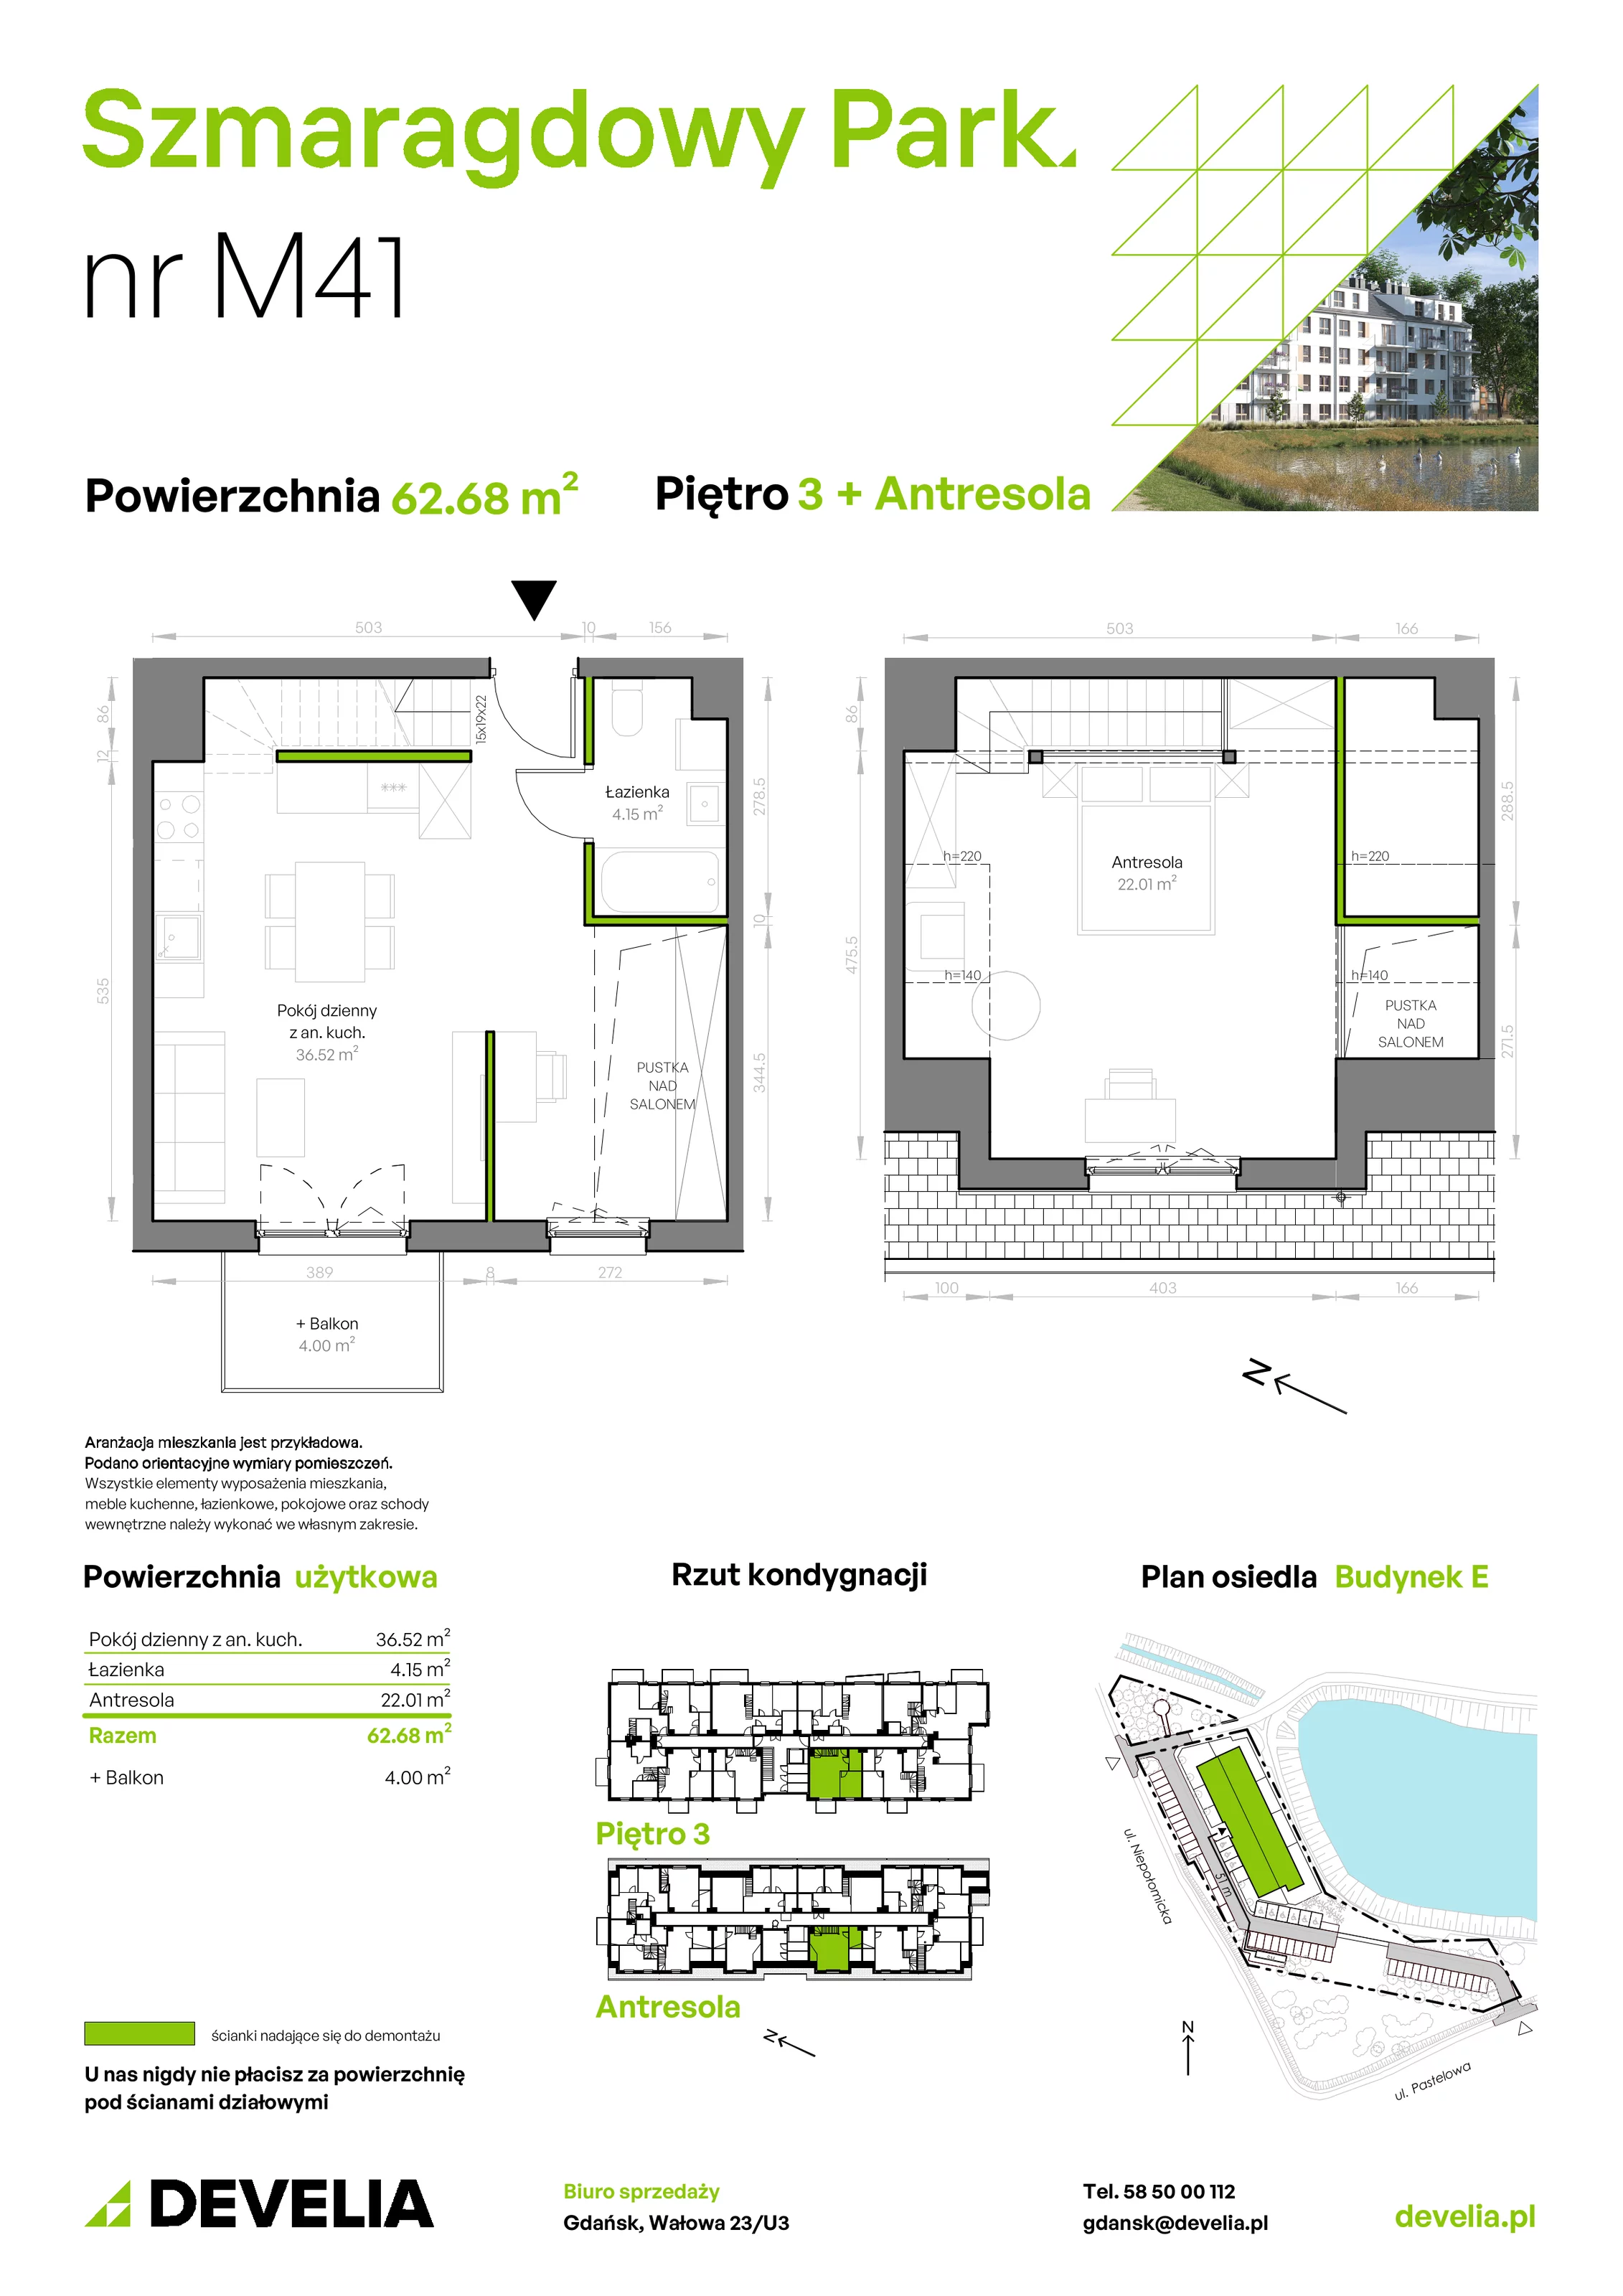 Mieszkanie 62,68 m², piętro 3, oferta nr E/041, Szmaragdowy Park, Gdańsk, Orunia Górna-Gdańsk Południe, Łostowice, ul. Topazowa 2